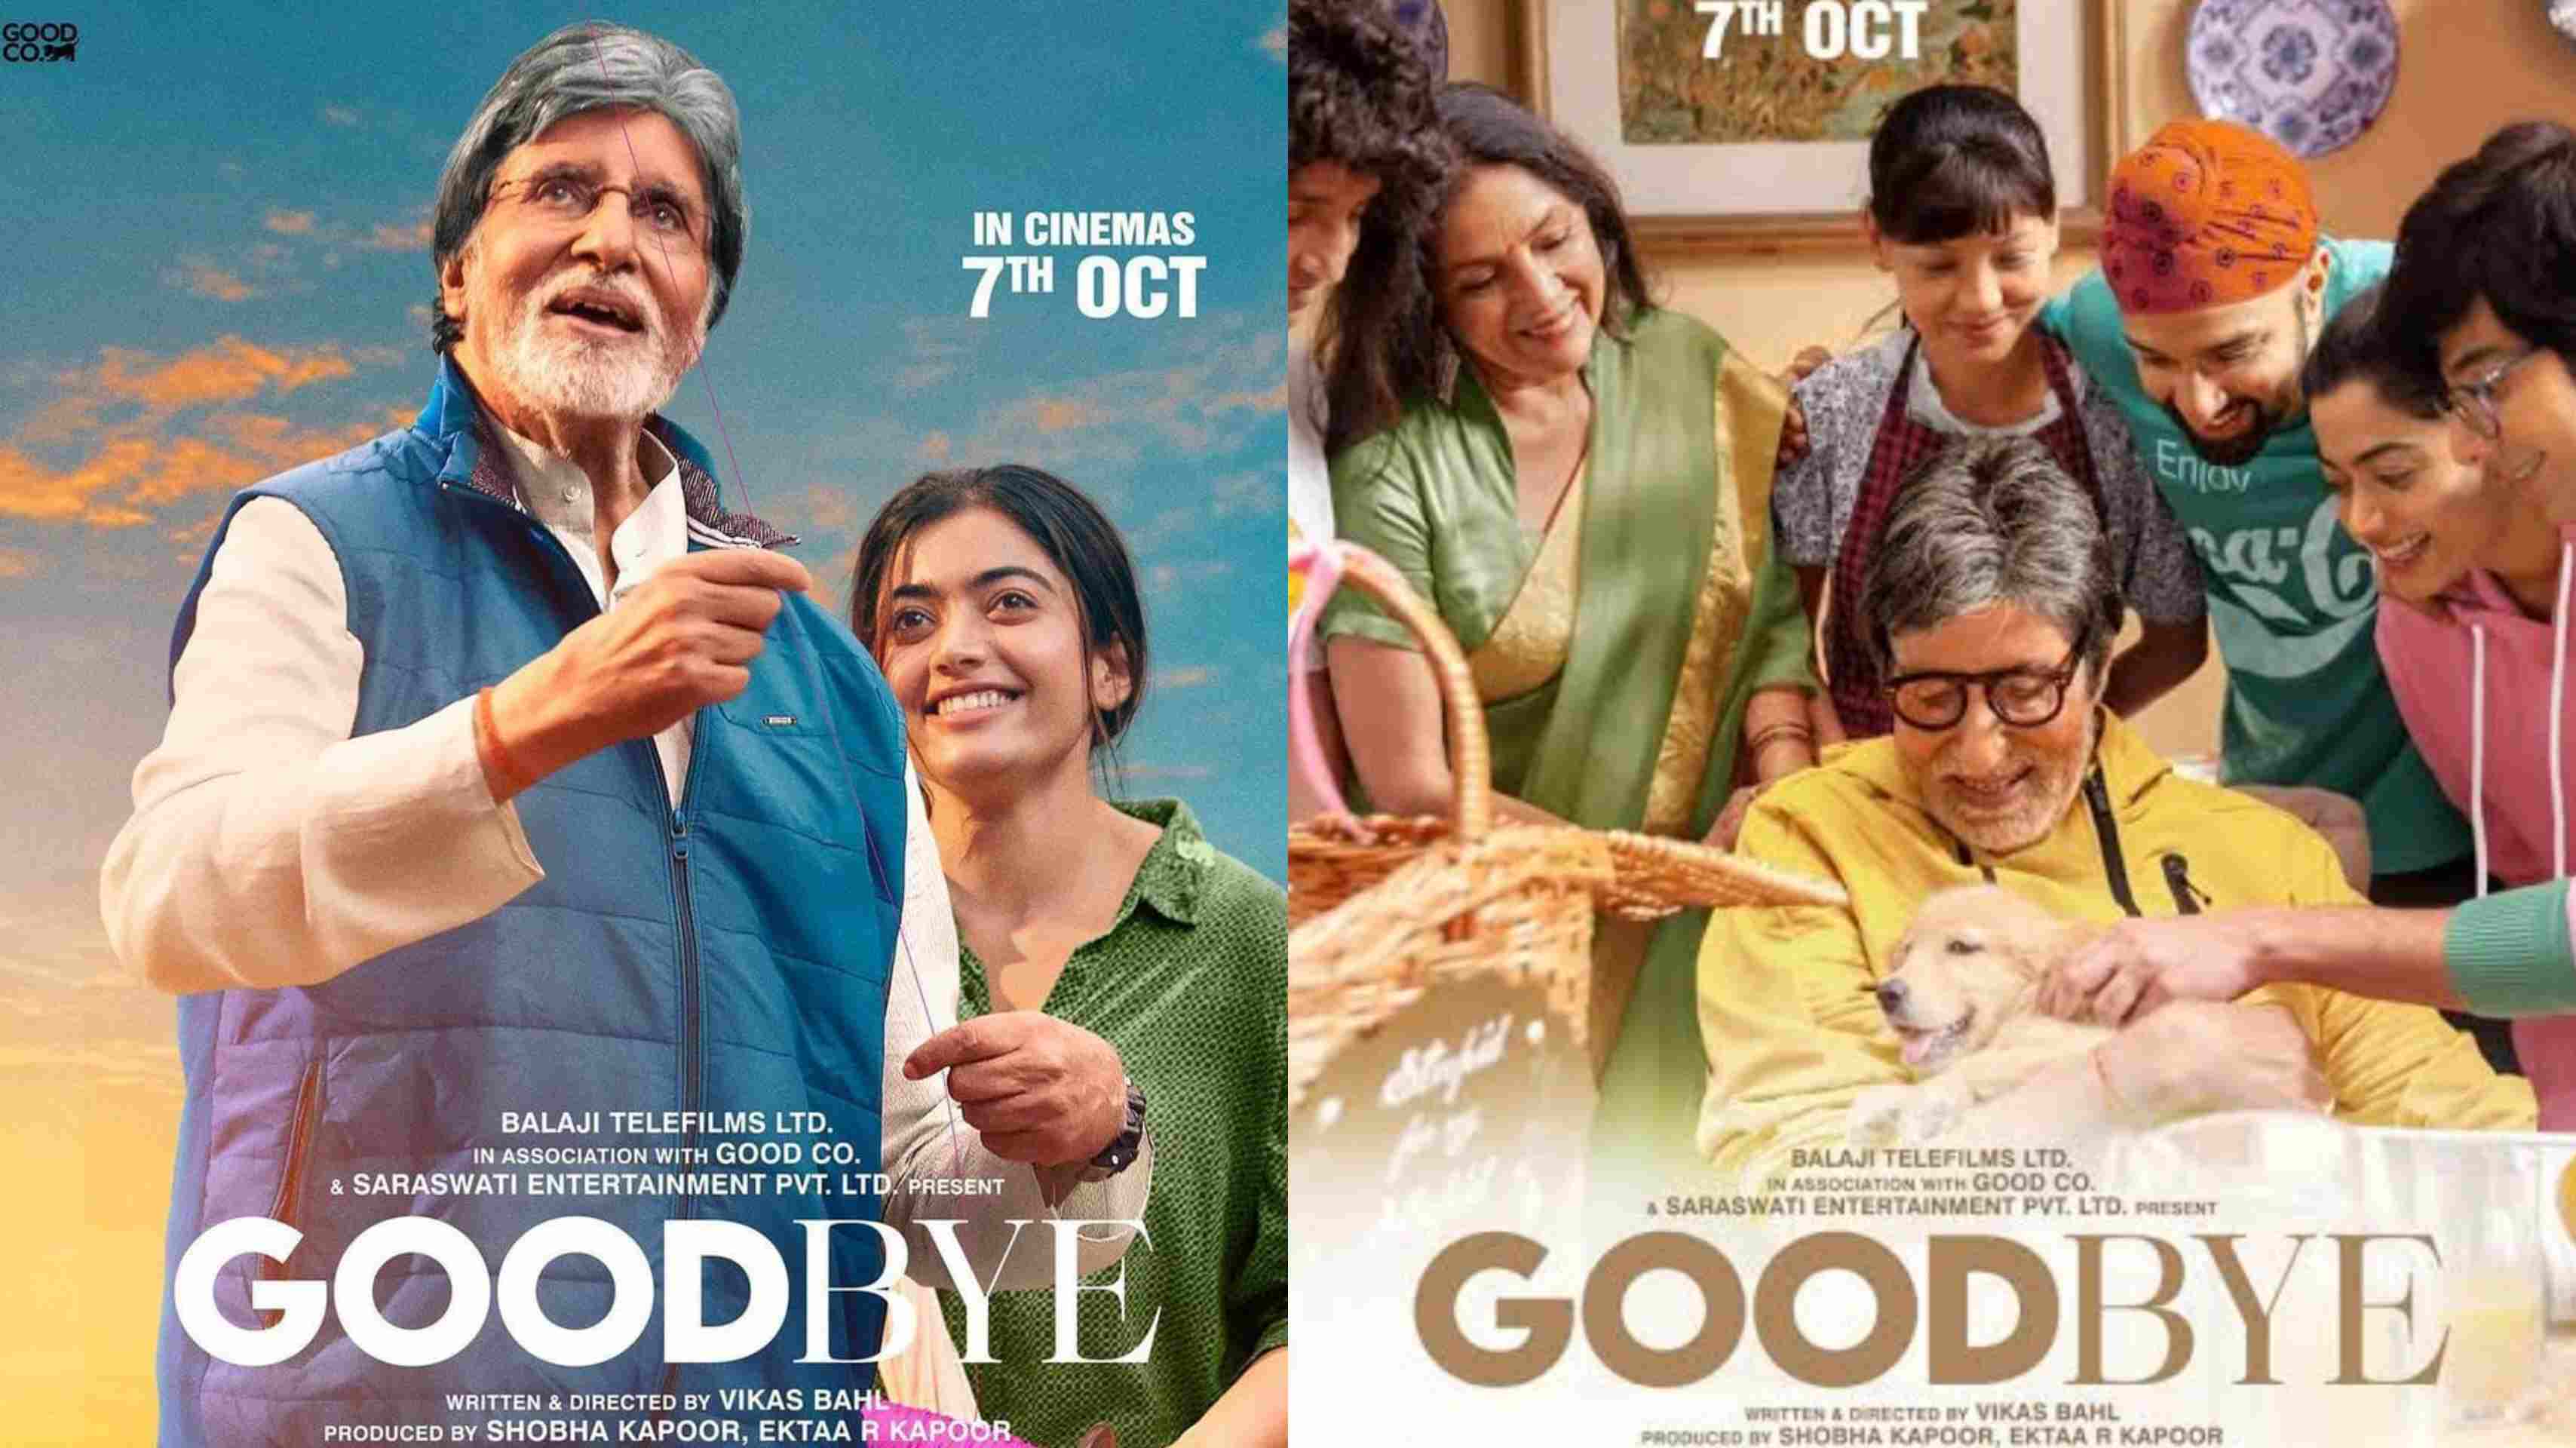 अमिताभ बच्चन की फिल्म गुड बाय ने दूसरे दिन कमाए 1.50 करोड़, आगे बेहतर प्रदर्शन की उम्मीद